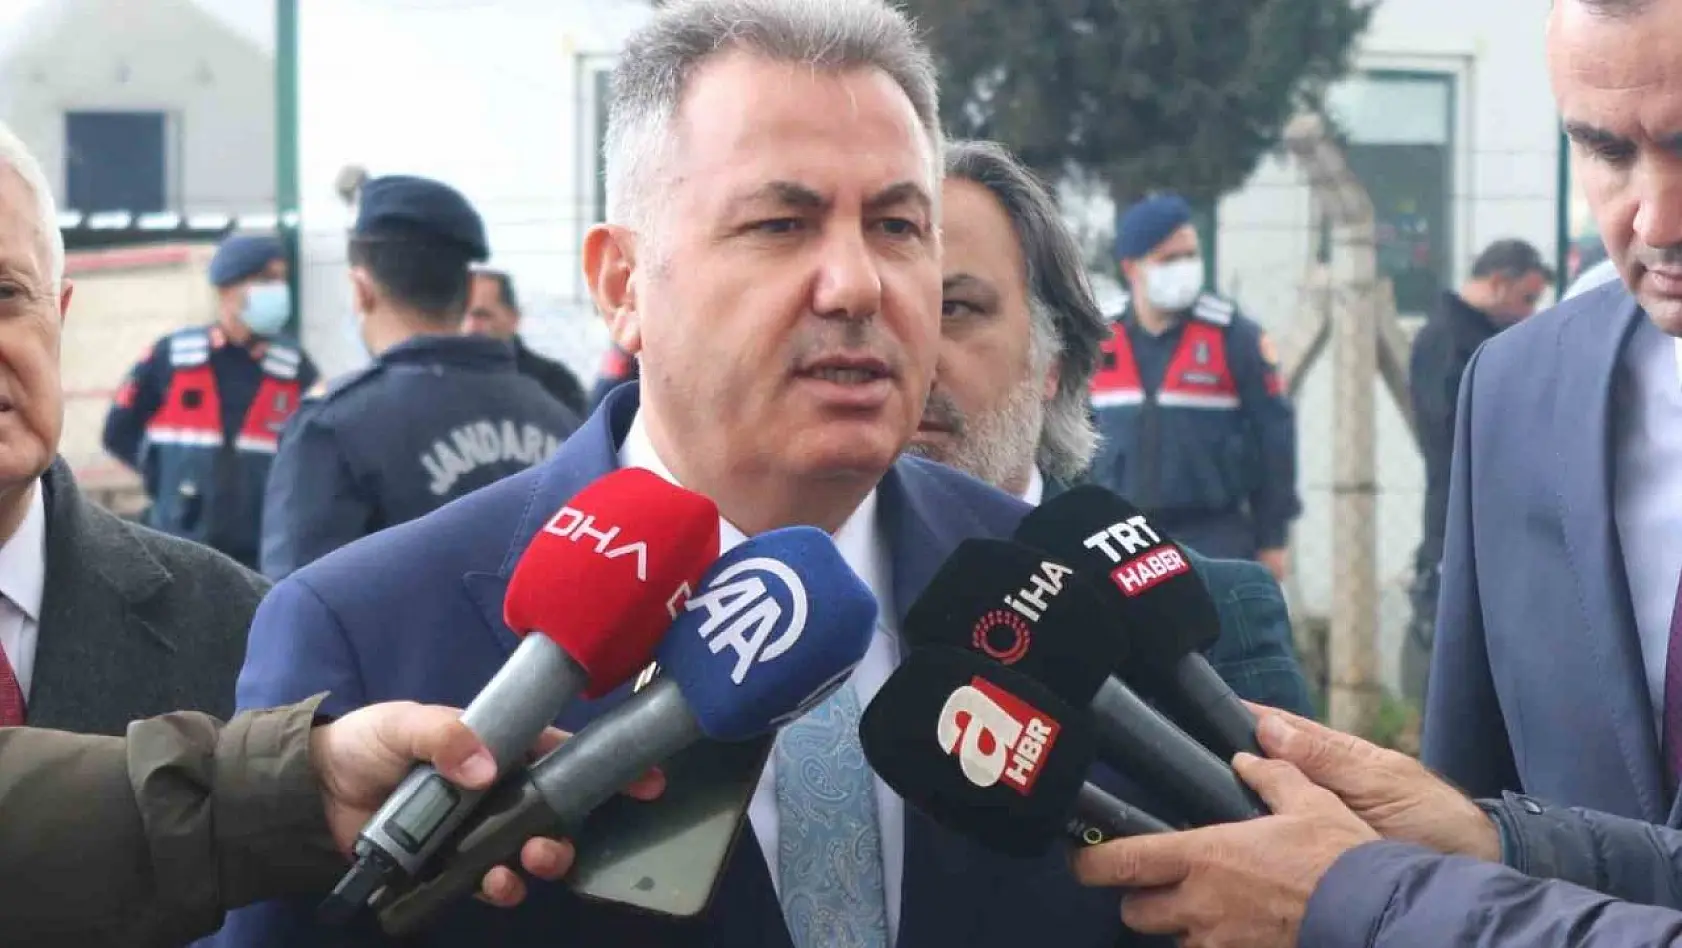 İzmir'deki depreme ilişkin Vali Elban'dan açıklama